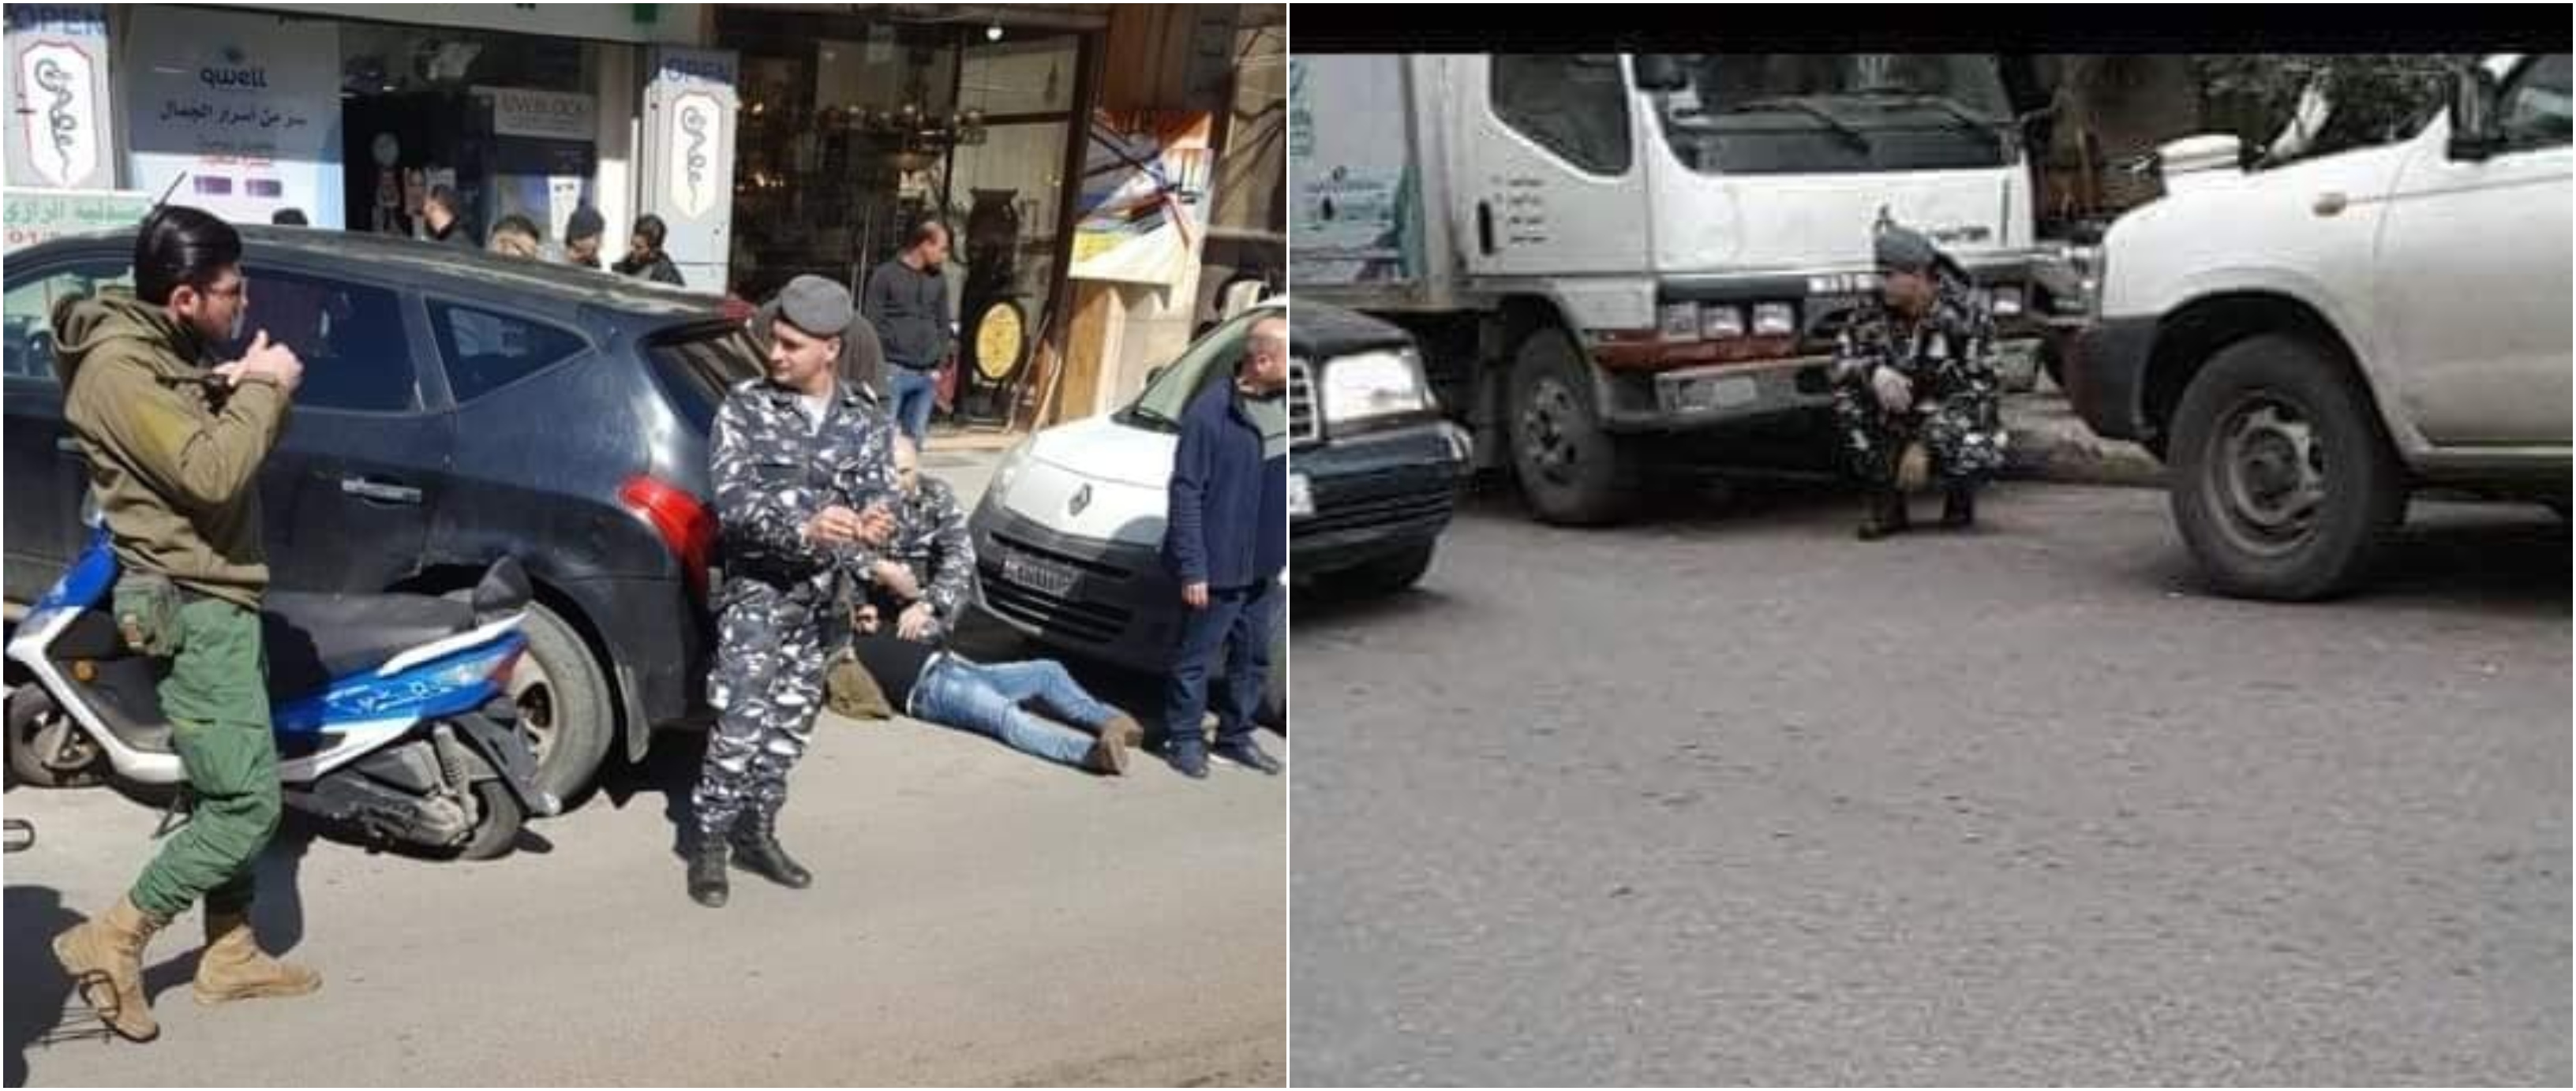 بعد تداول هاتين الصورتين قوى الأمن توضح: الأولى قديمة ومركبة والثانية لحادث اصطدام 